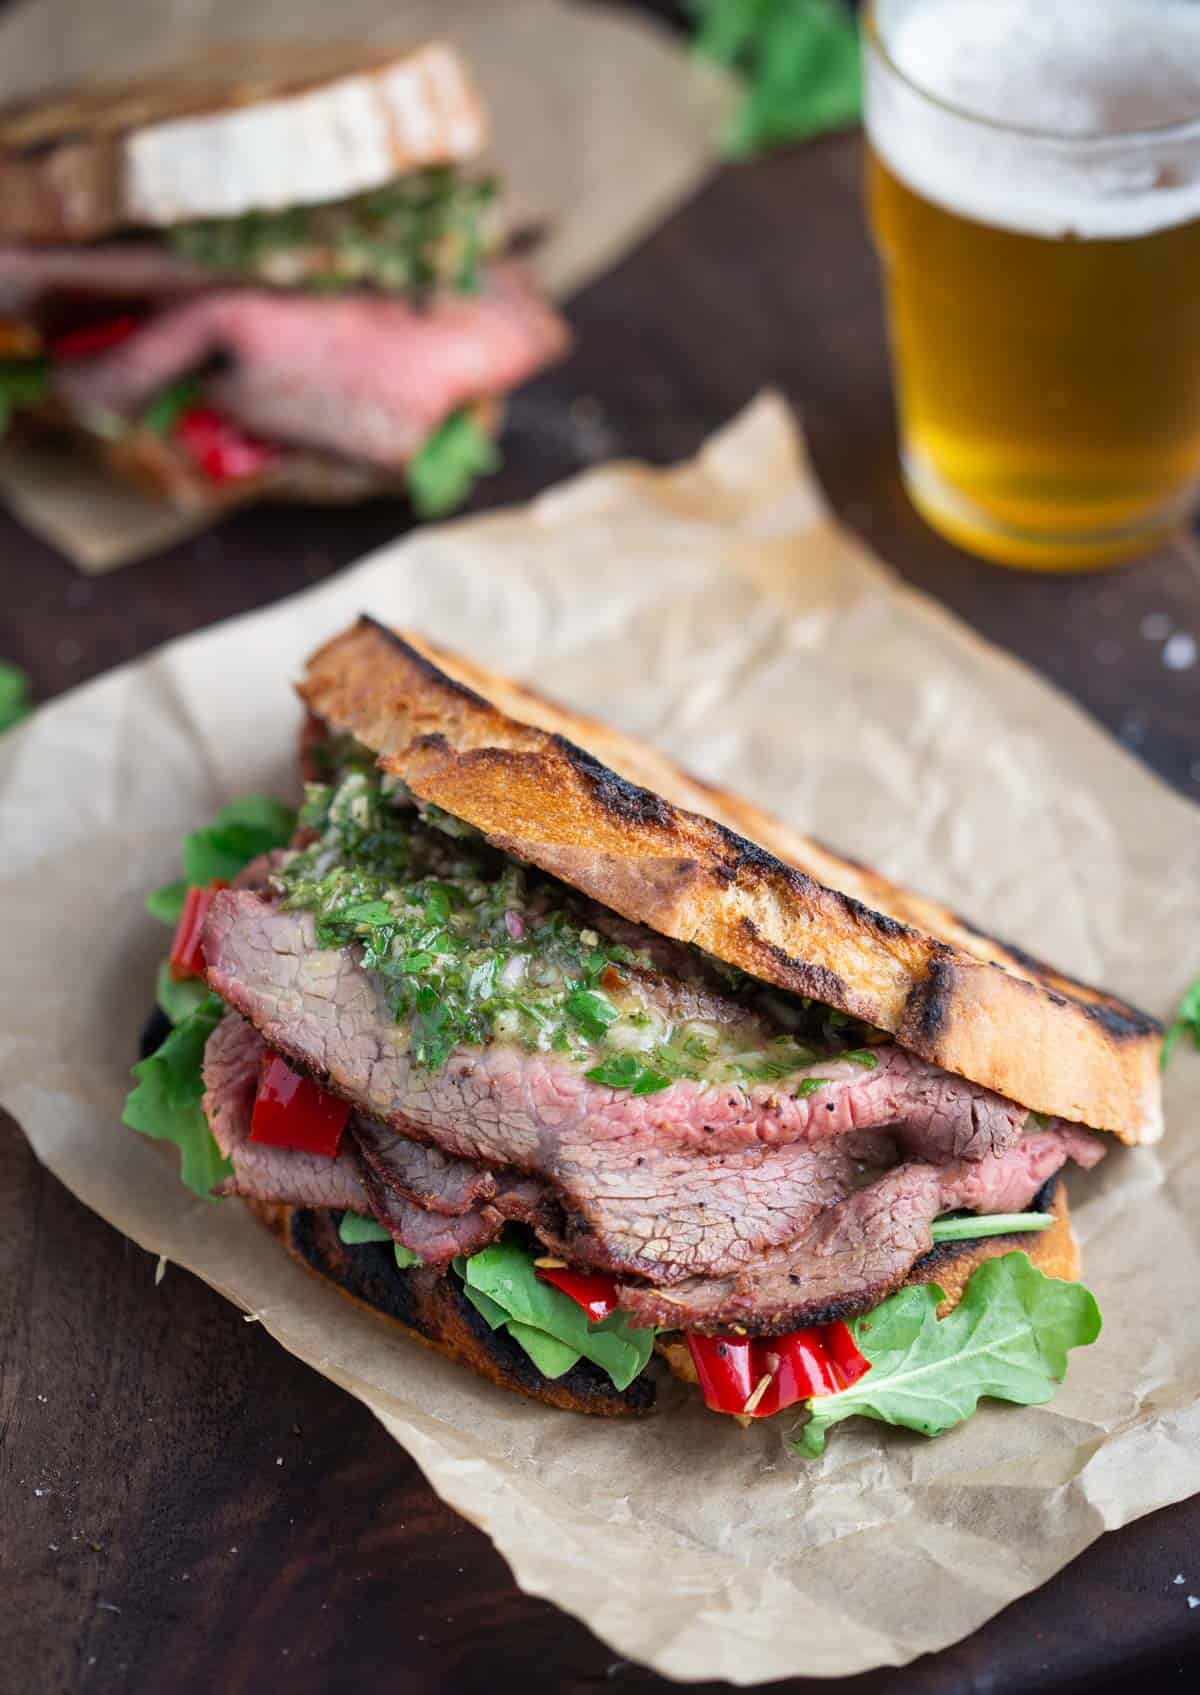 Tri Tip Steak Sandwich with a beer.